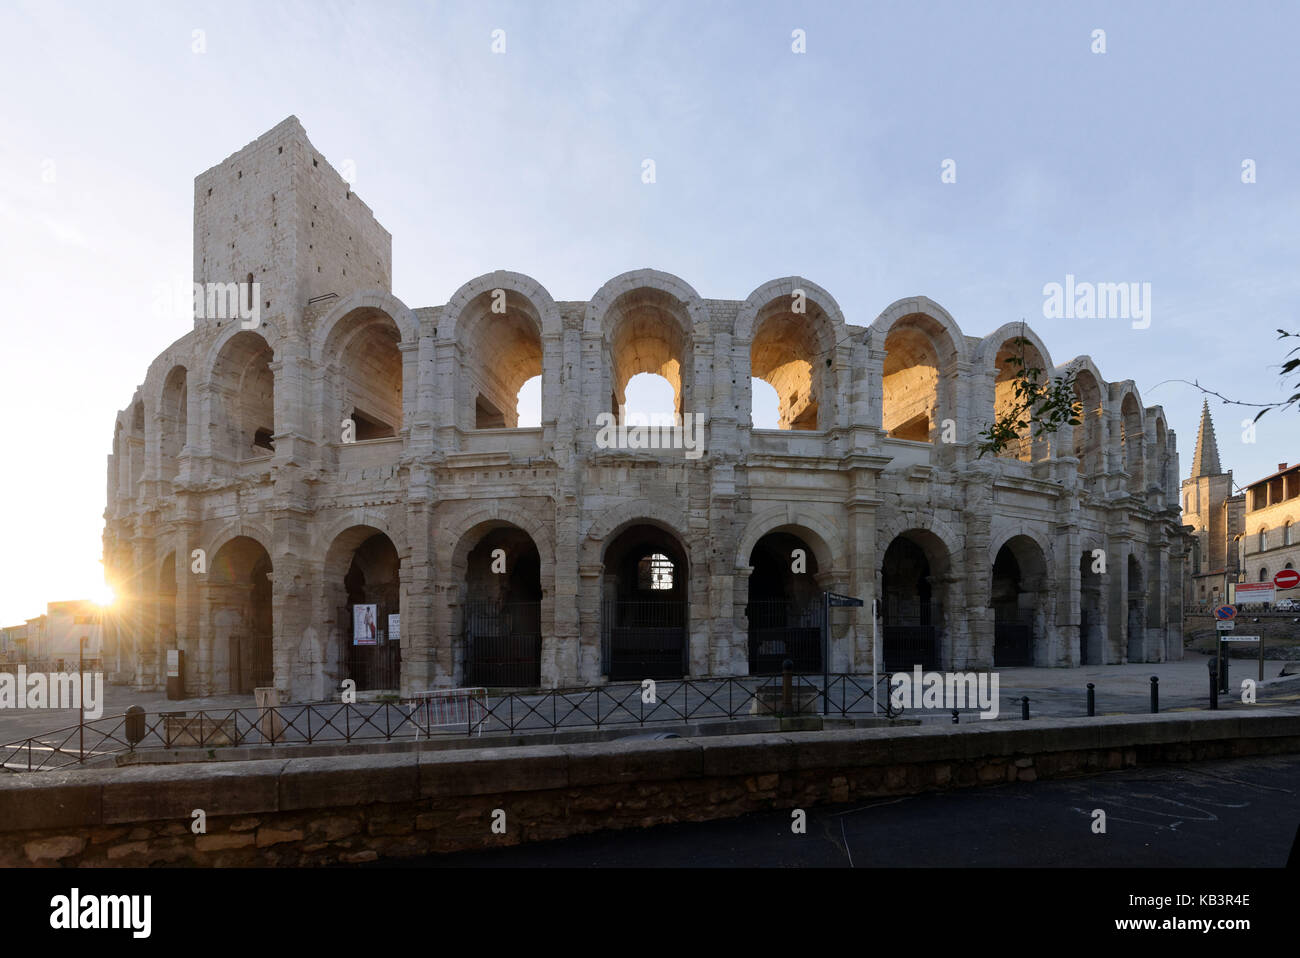 Frankreich, Bouches-du-Rhone, Arles, die Arenen, das römische Amphitheater von 80-90 Ad, als Weltkulturerbe von der unesco Stockfoto